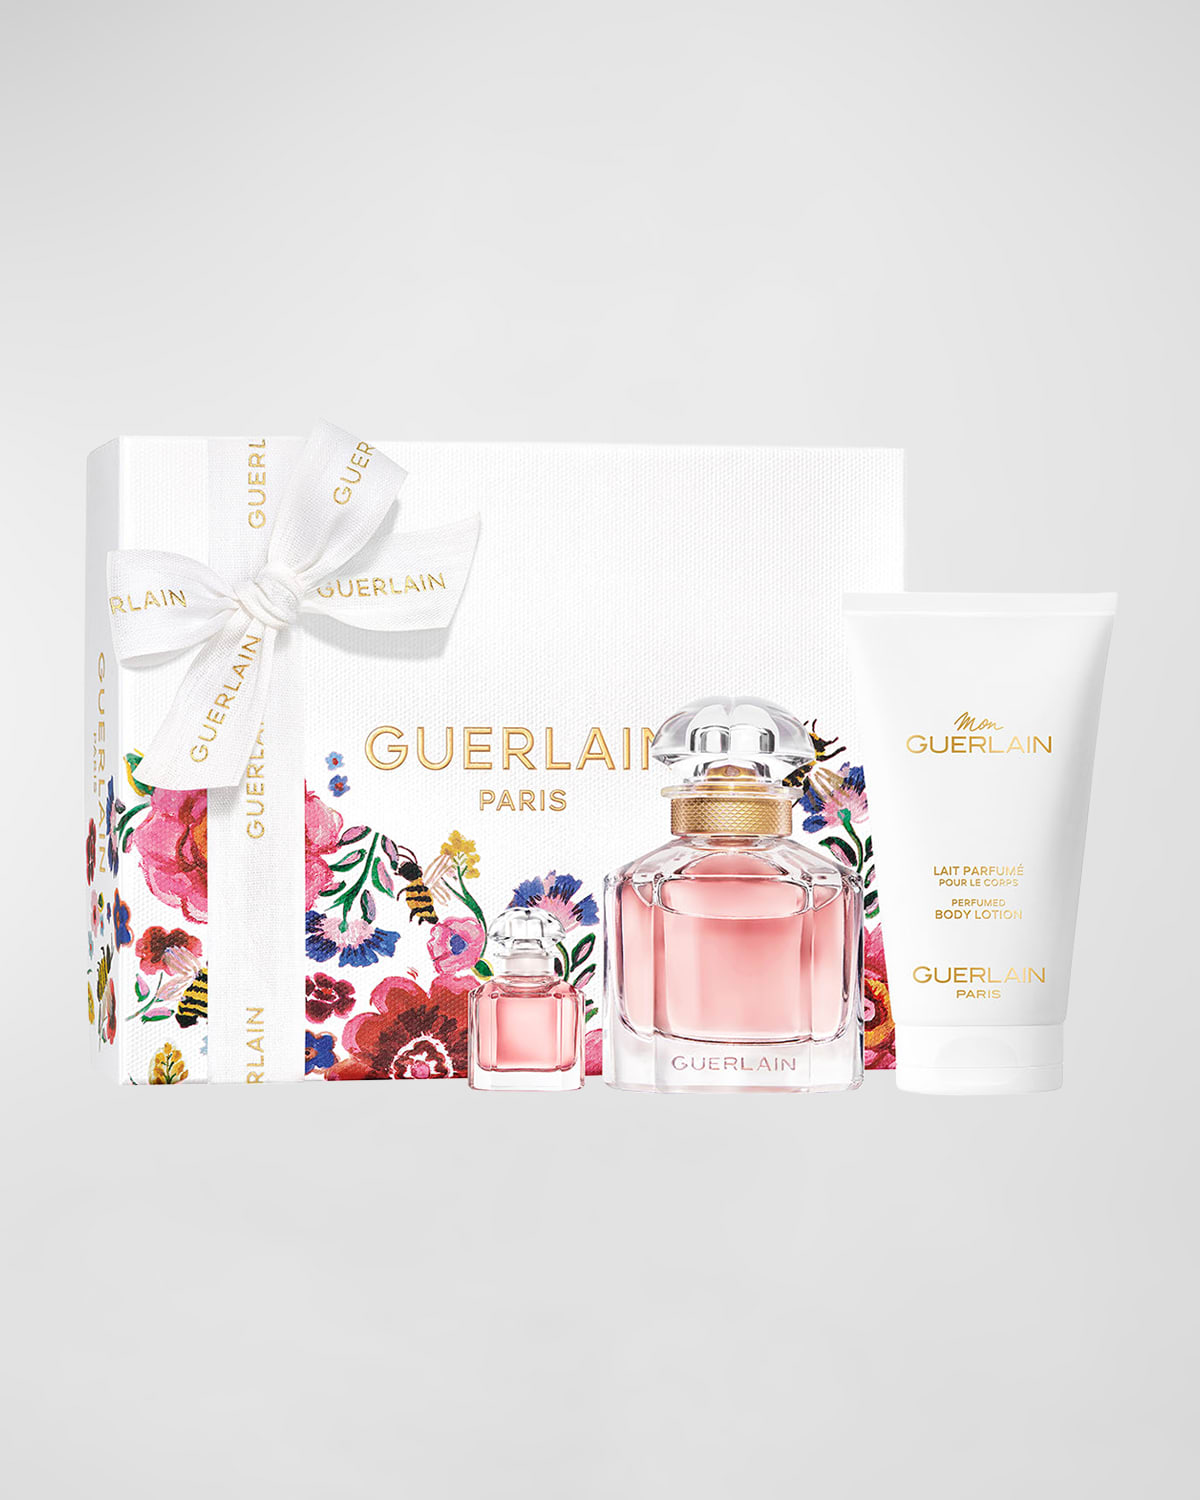 GUERLAIN Limited Edition Mon Guerlain Eau de Parfum Mother's Day Set ($150 Value)